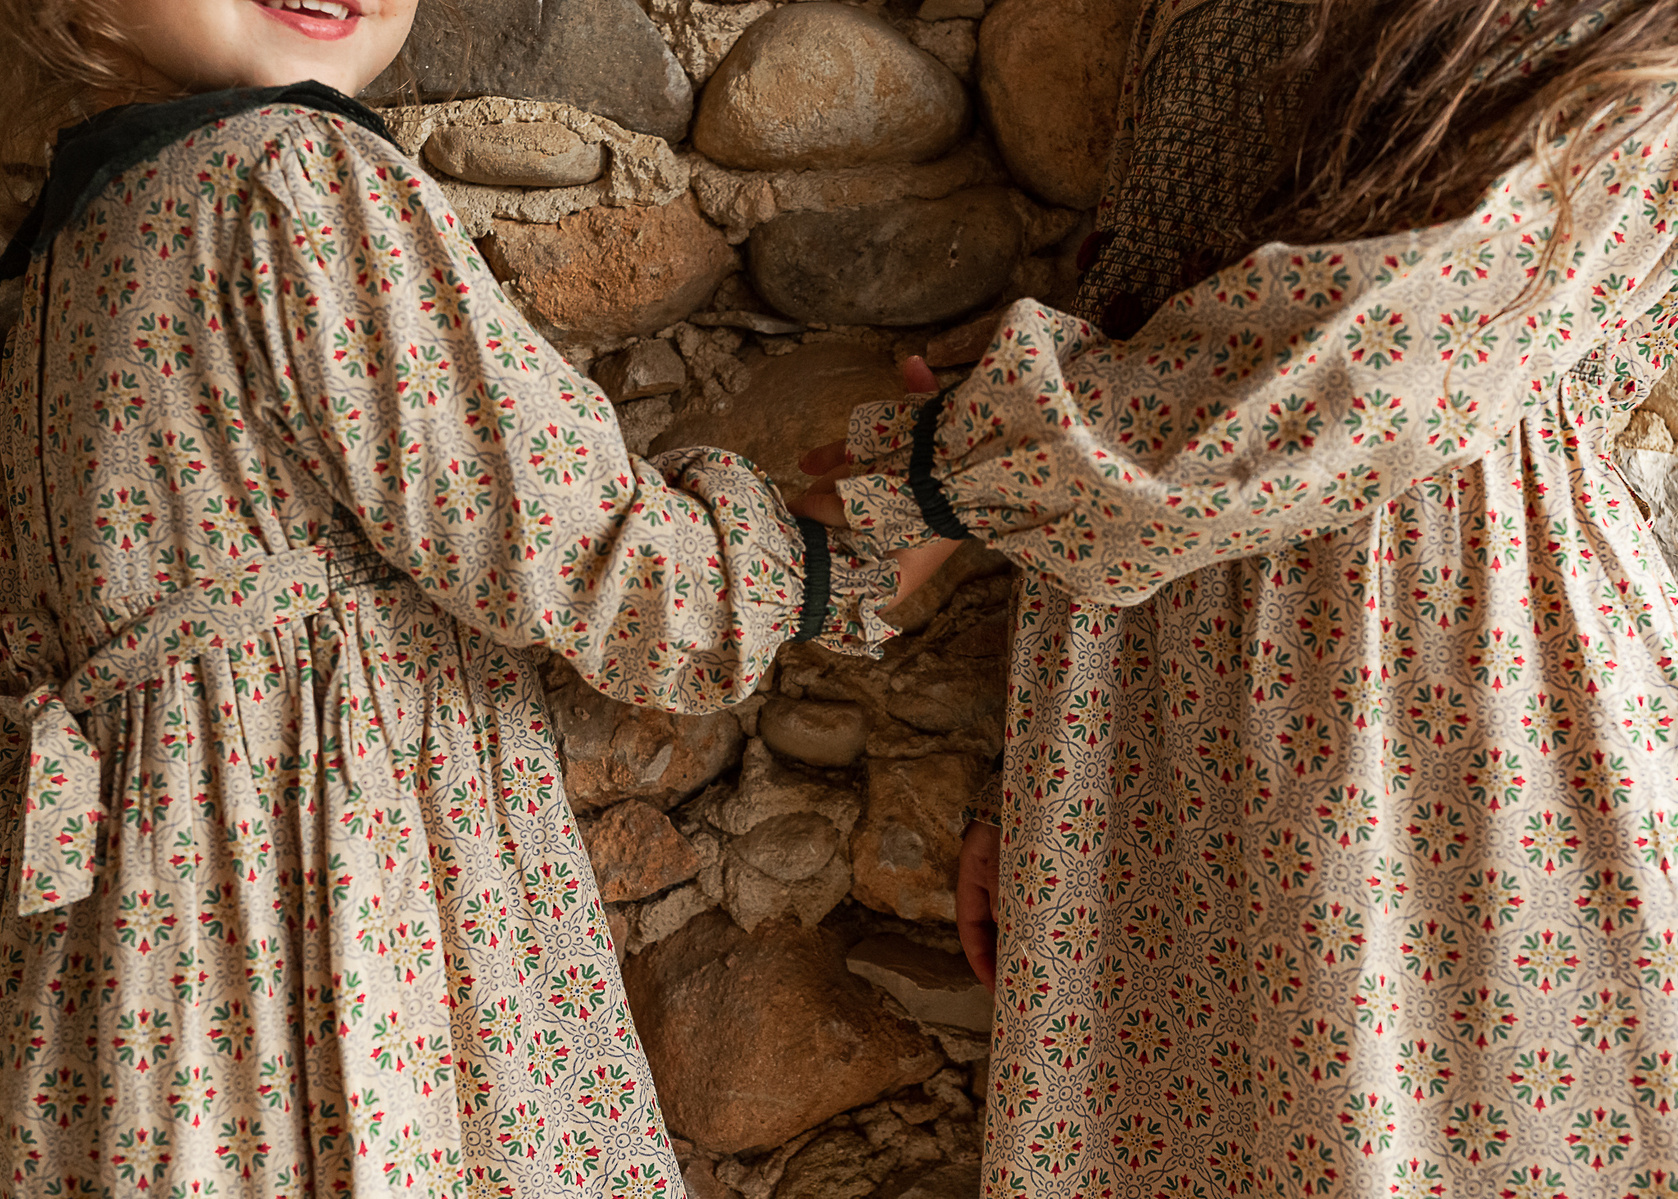 detalle de niñas cogidas de la mano  en un pajar de una Masia en Pla de l'Estany, girona, españa